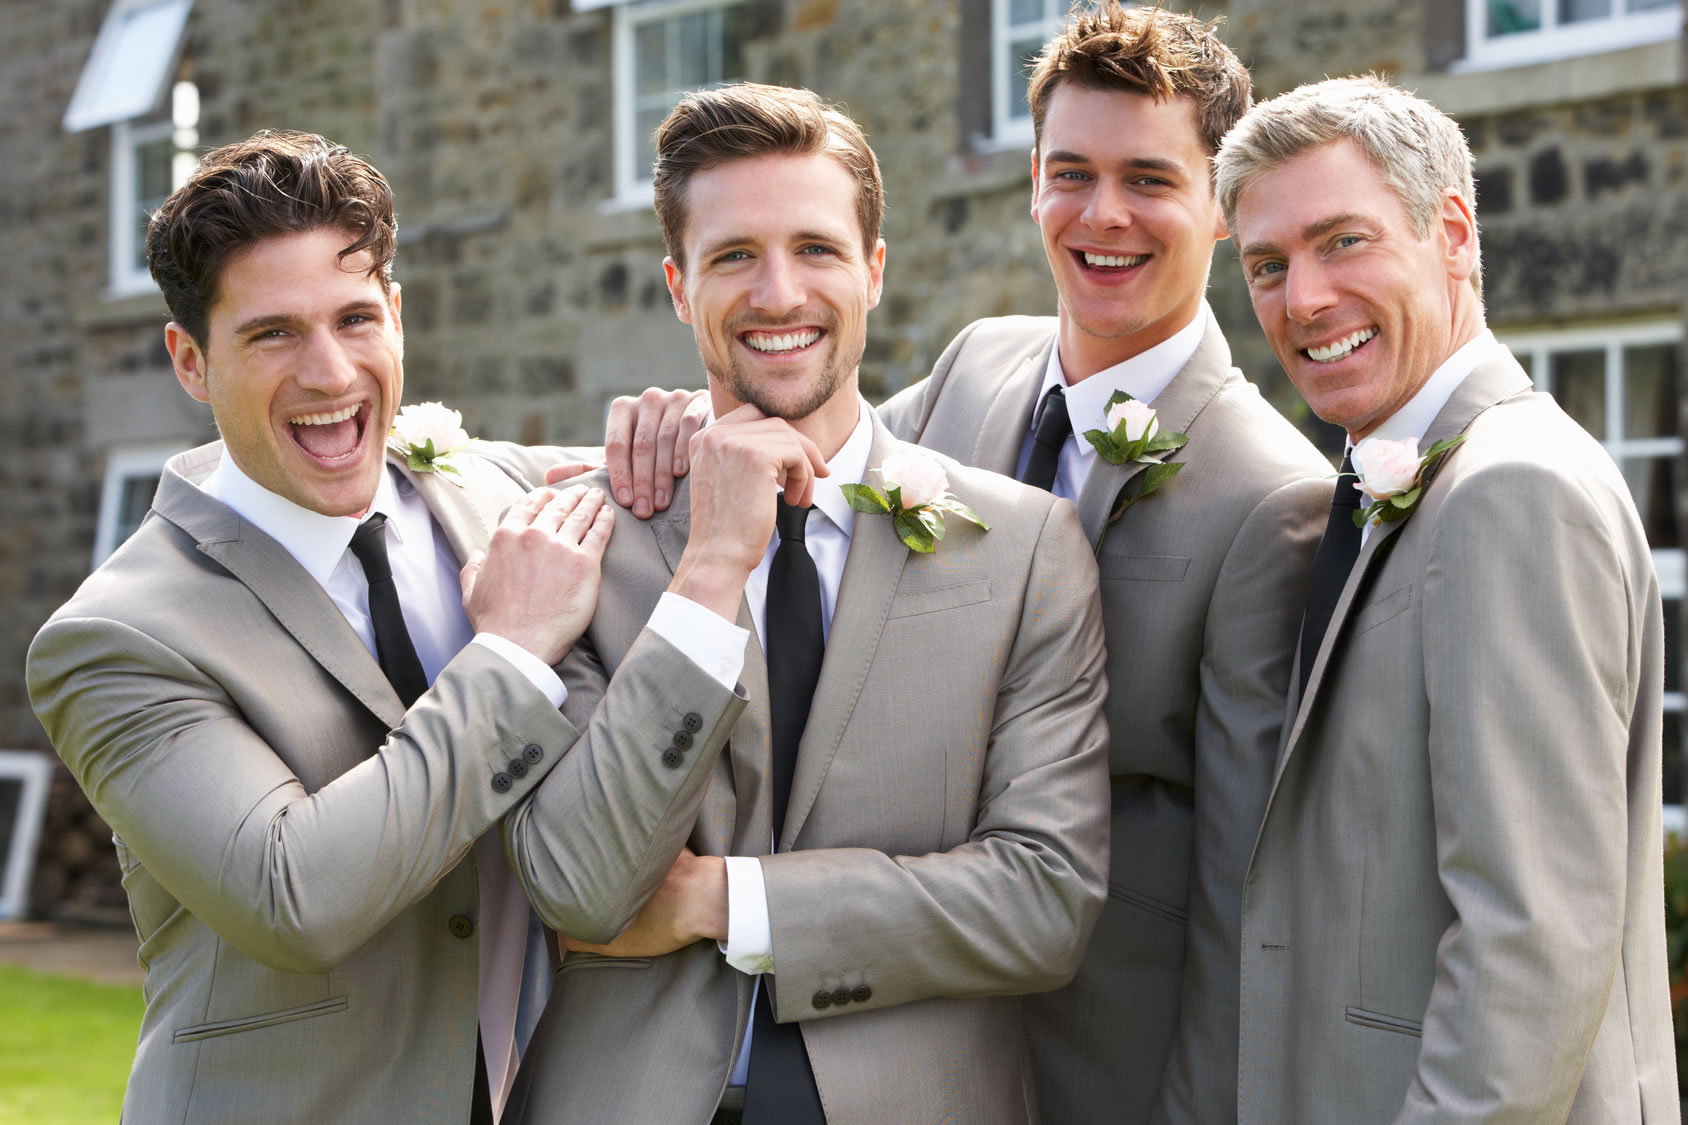 Men's Wedding Suits